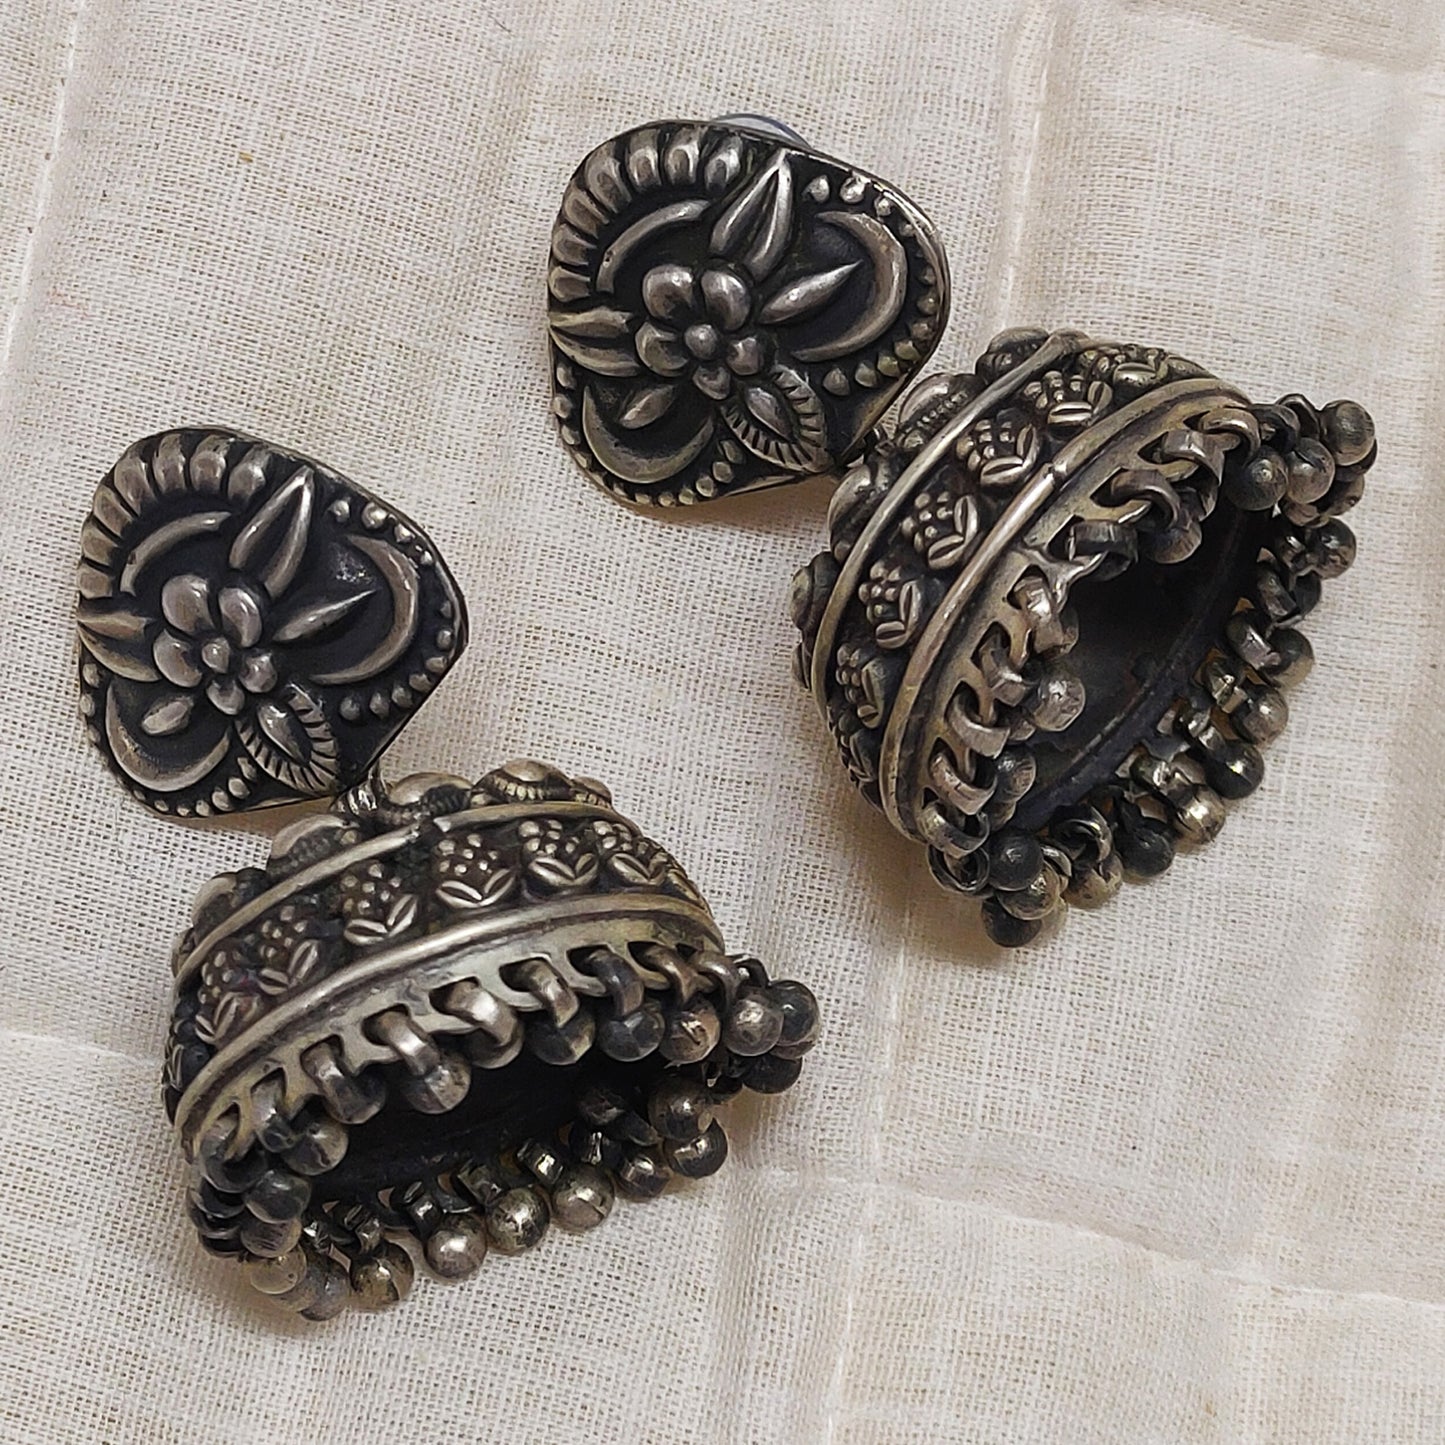 Rajasthan Tribal Jhumka Silver Earrings